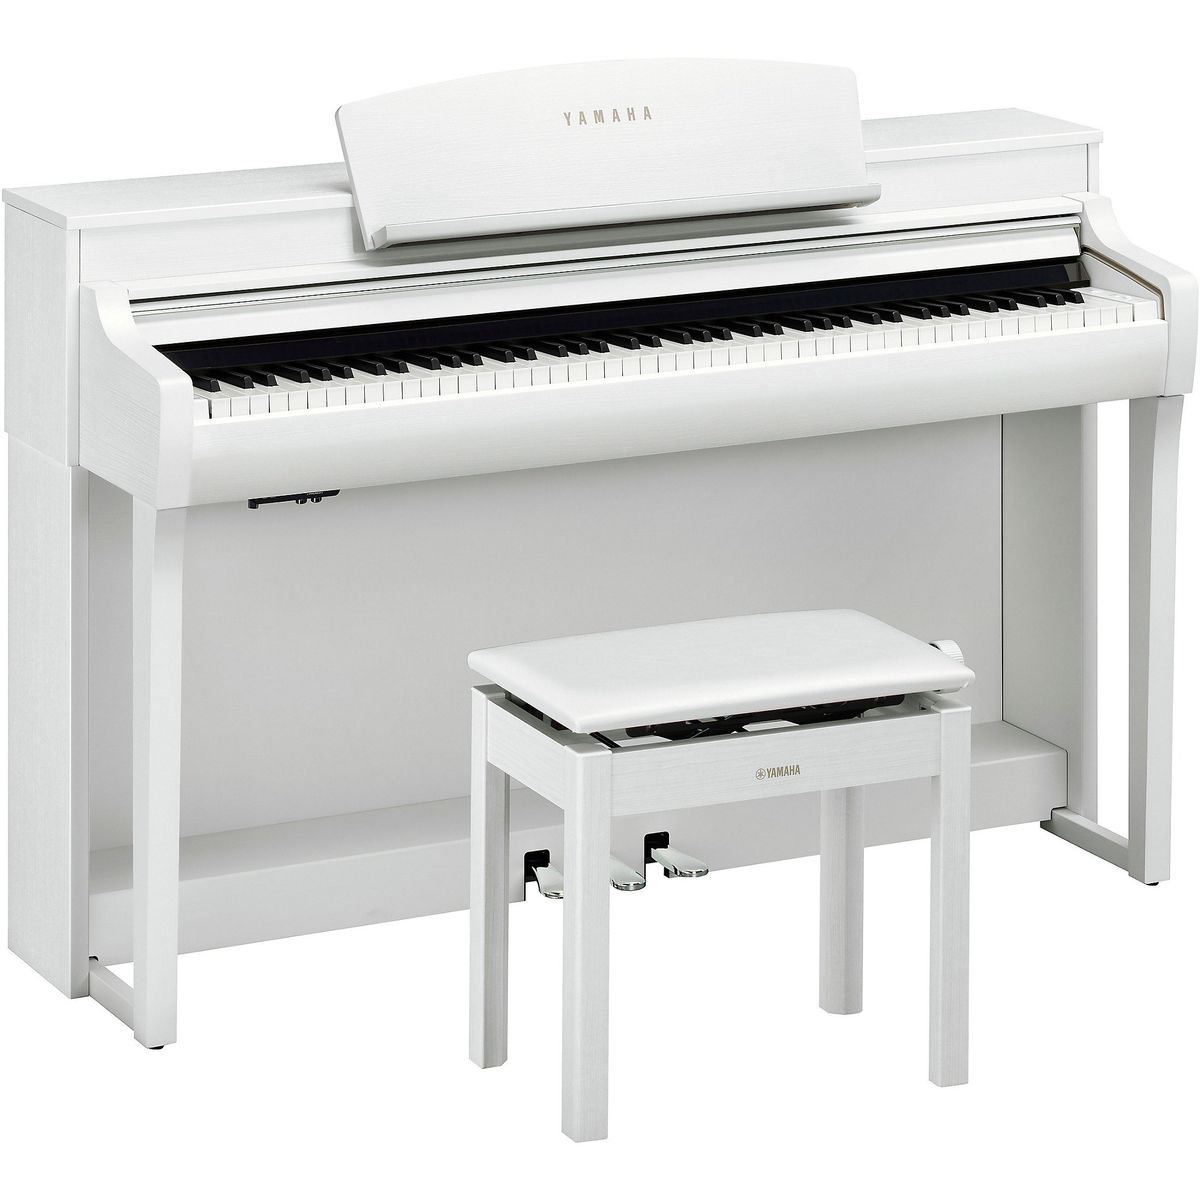 Цифровые пианино Yamaha CSP-255WH (банкетка в комплекте) bigfun 37 клавиш usb электронный орган детское электрическое пианино с микрофоном черная цифровая музыкальная электронная клавиатура